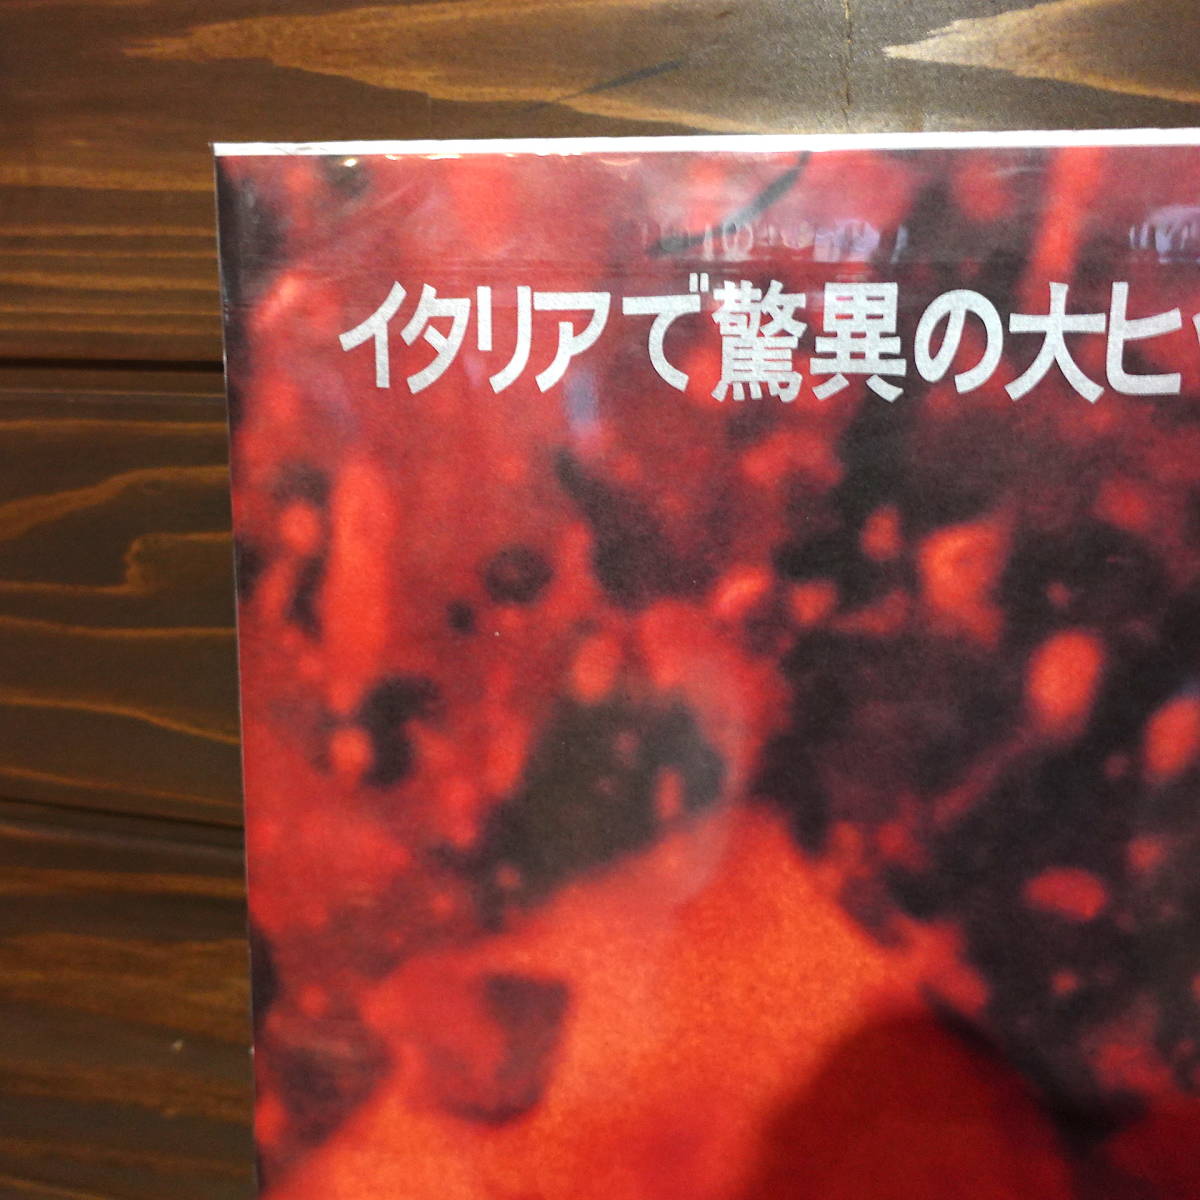  фильм постер [zombi]1979 год первый в Японии публичный версия /Dawn of the Dead/Zombie/ George *A*romero постановка / Tom *sa vi -ni/ ужасы 